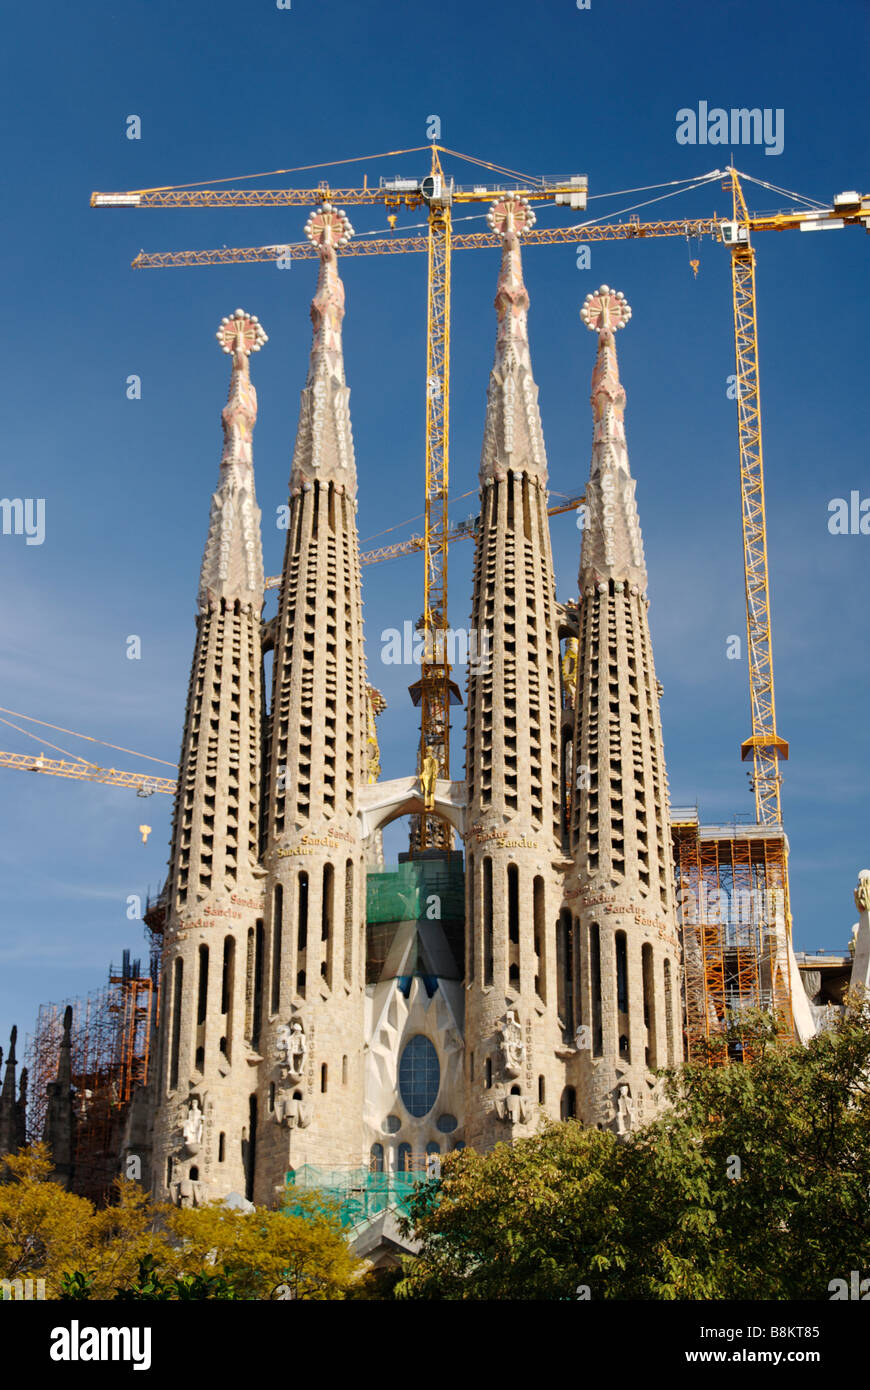 L'église Sagrada Familia conçue par l'architecte moderniste Antoni Gaudí Barcelone Espagne Banque D'Images